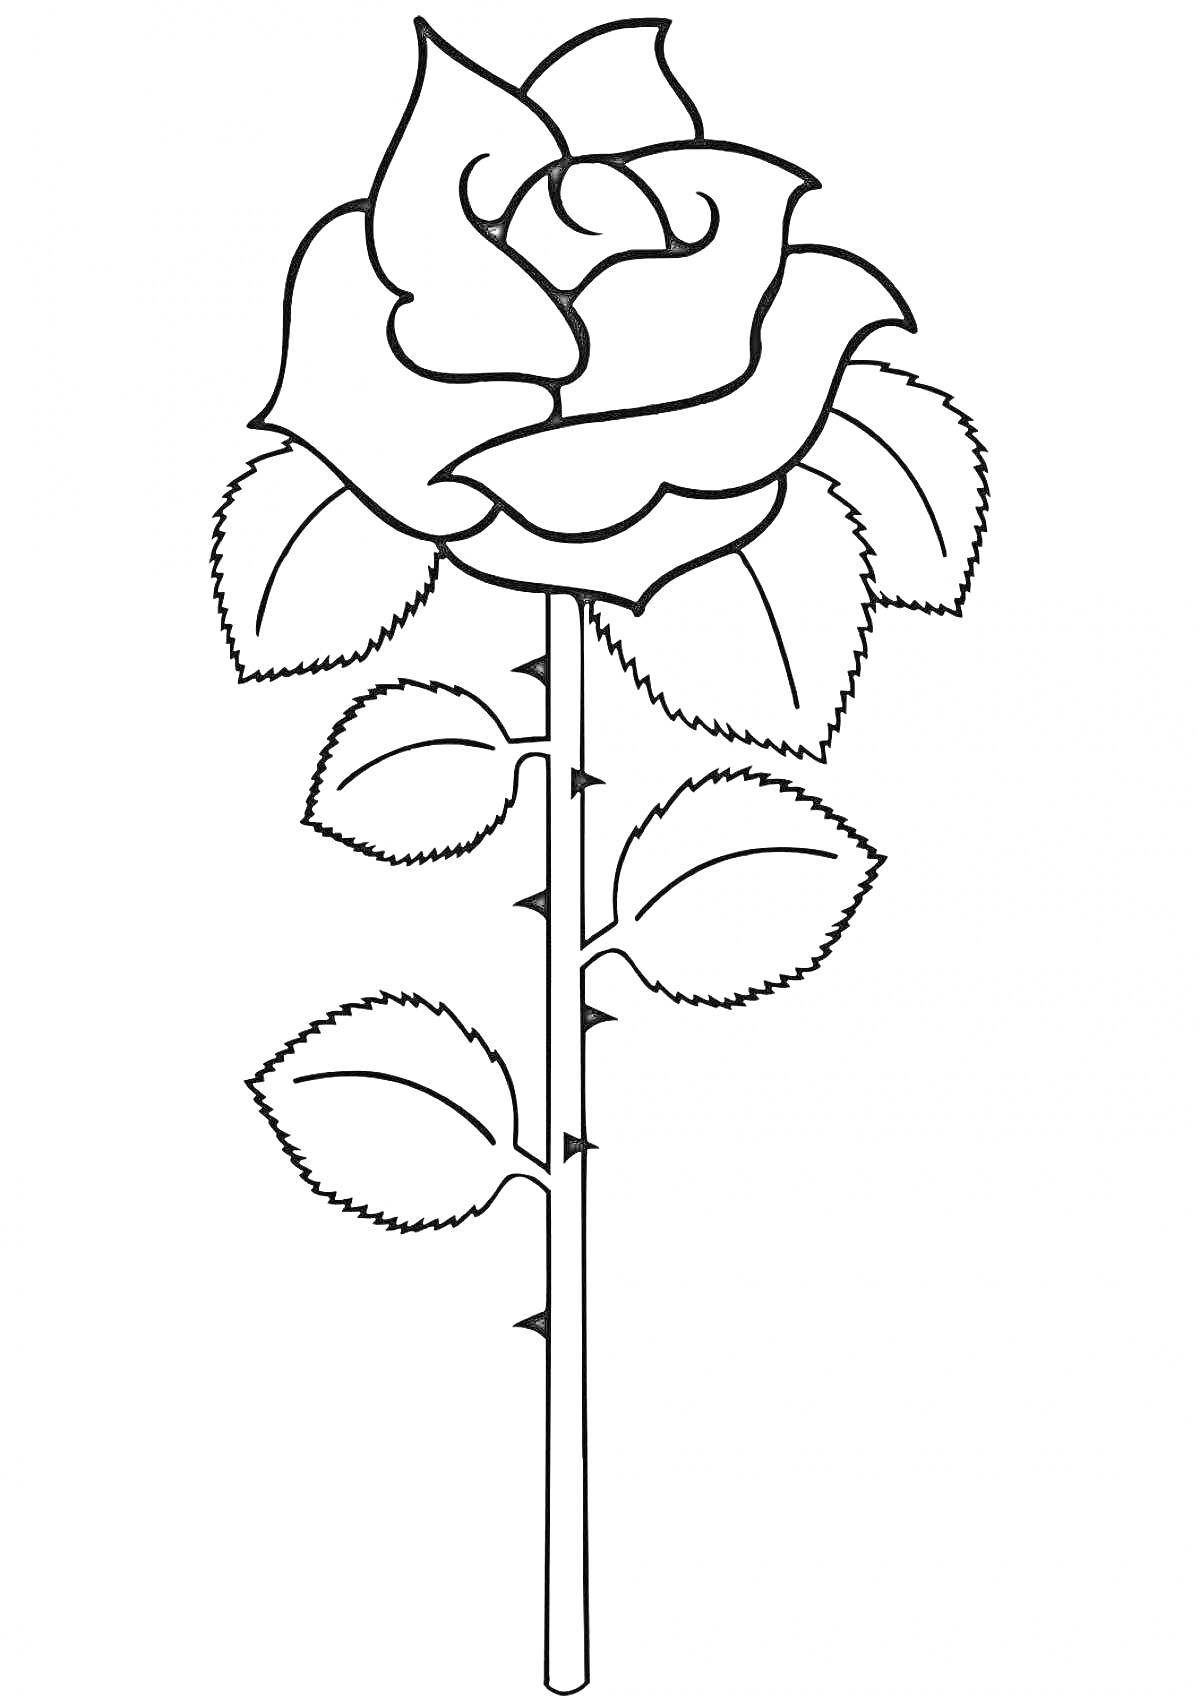 Раскраска Роза с листьями и шипами для раскрашивания